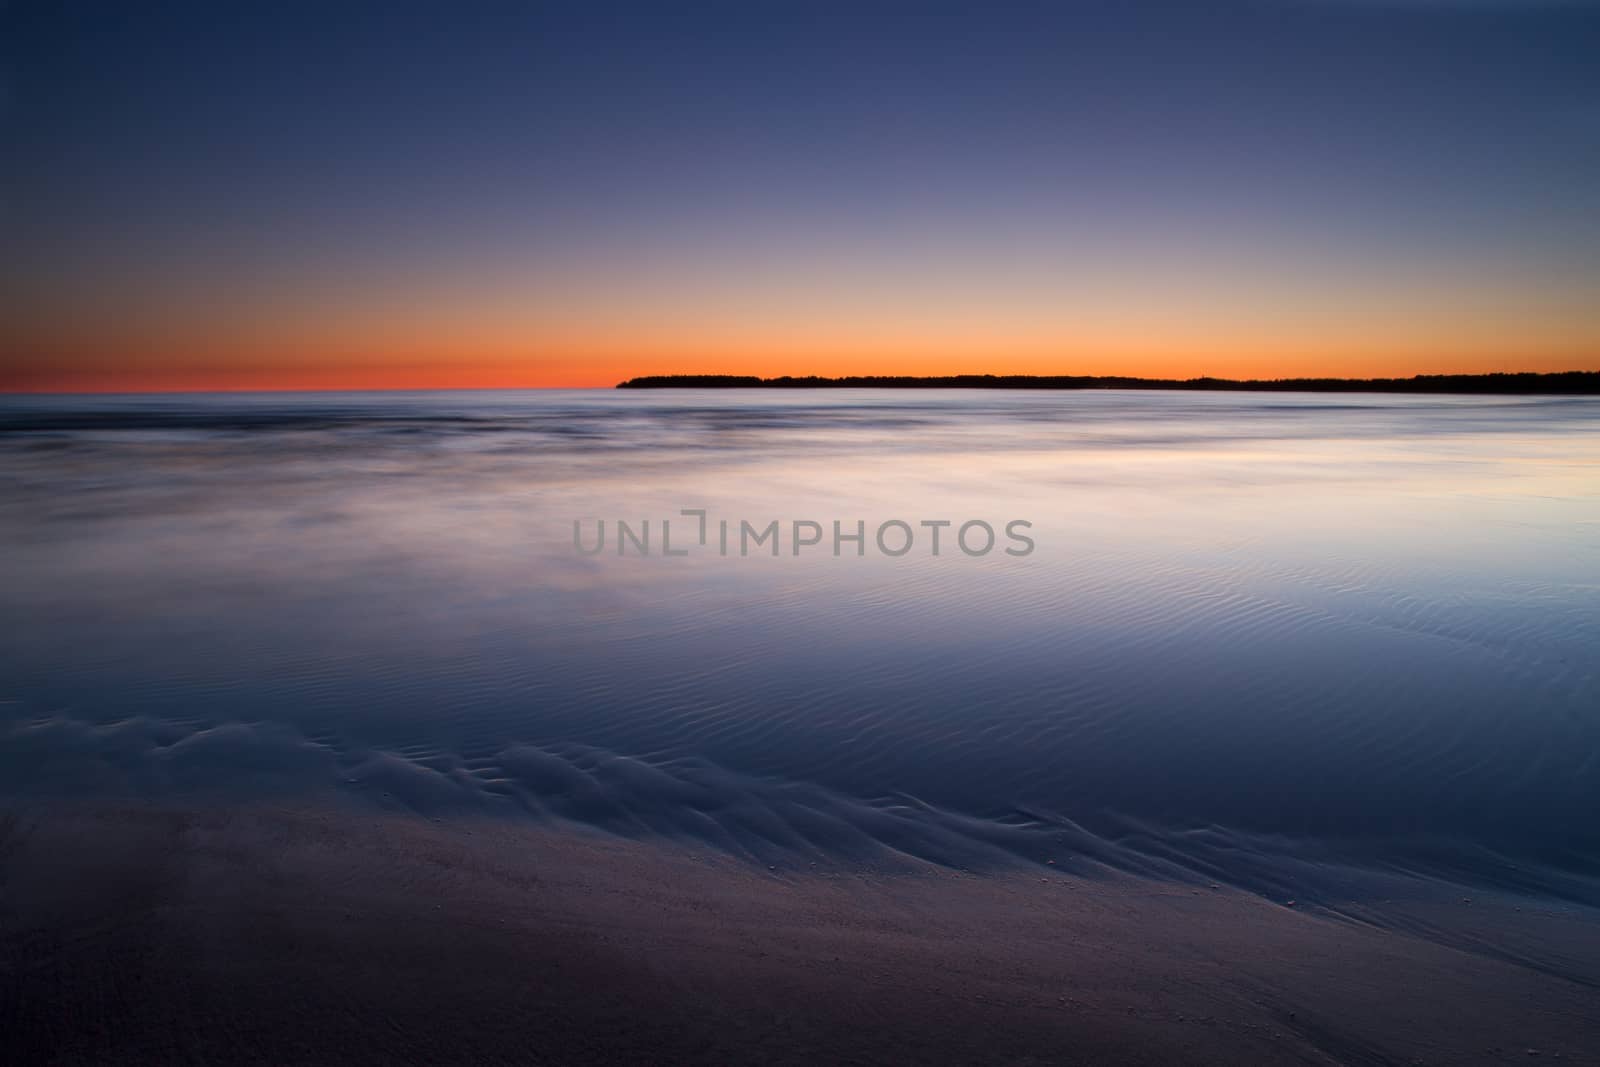 Sunset on Yyteri's sandy beach by leorantala